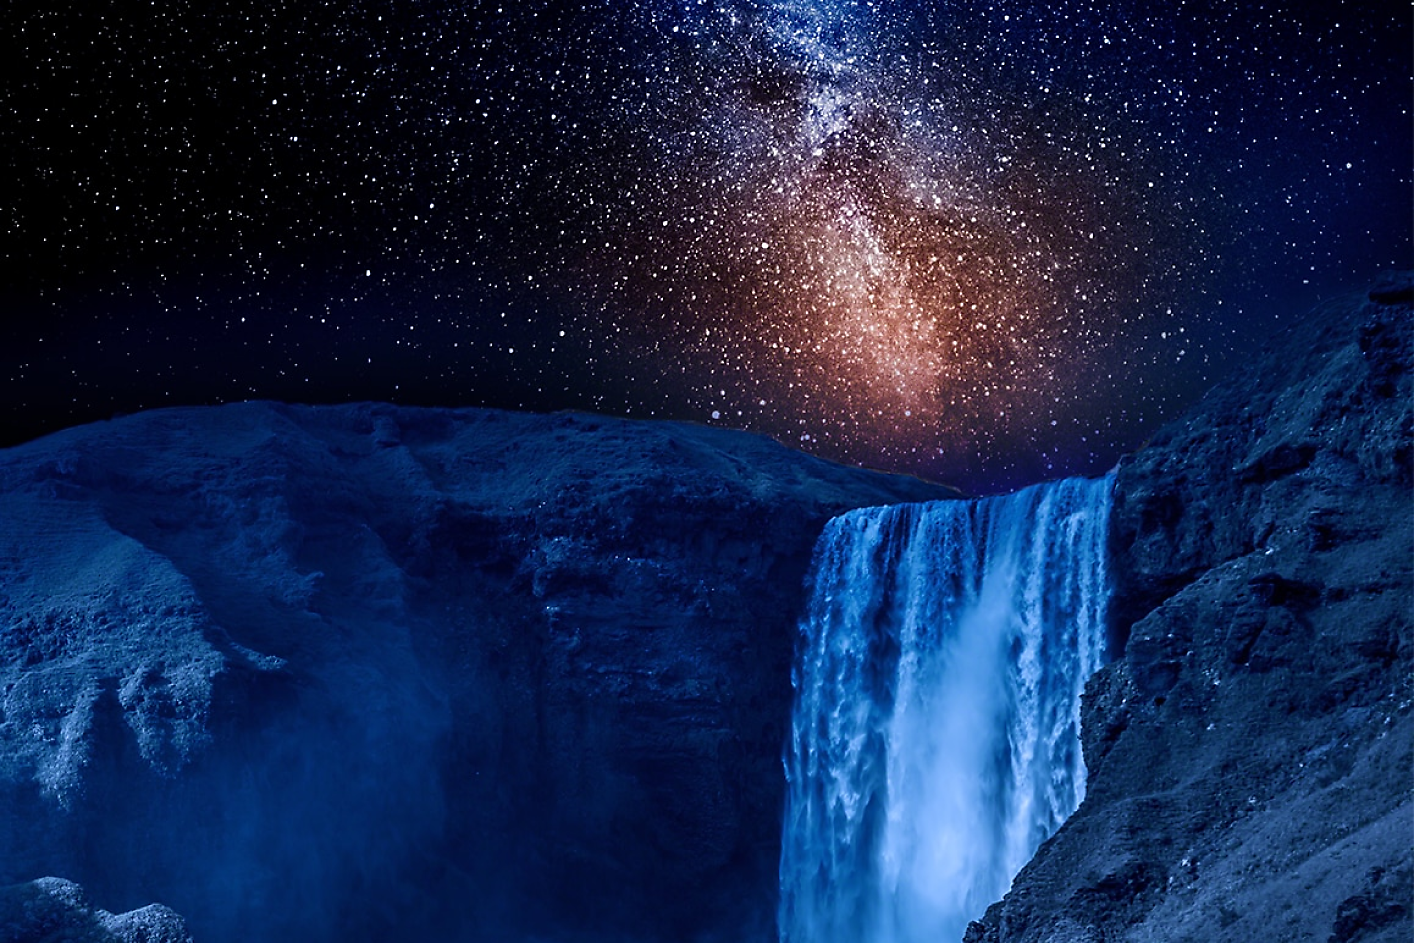 Es wird ein dunkelblauer Wasserfall mit einem sternenklaren Nachthimmel im Hintergrund gezeigt